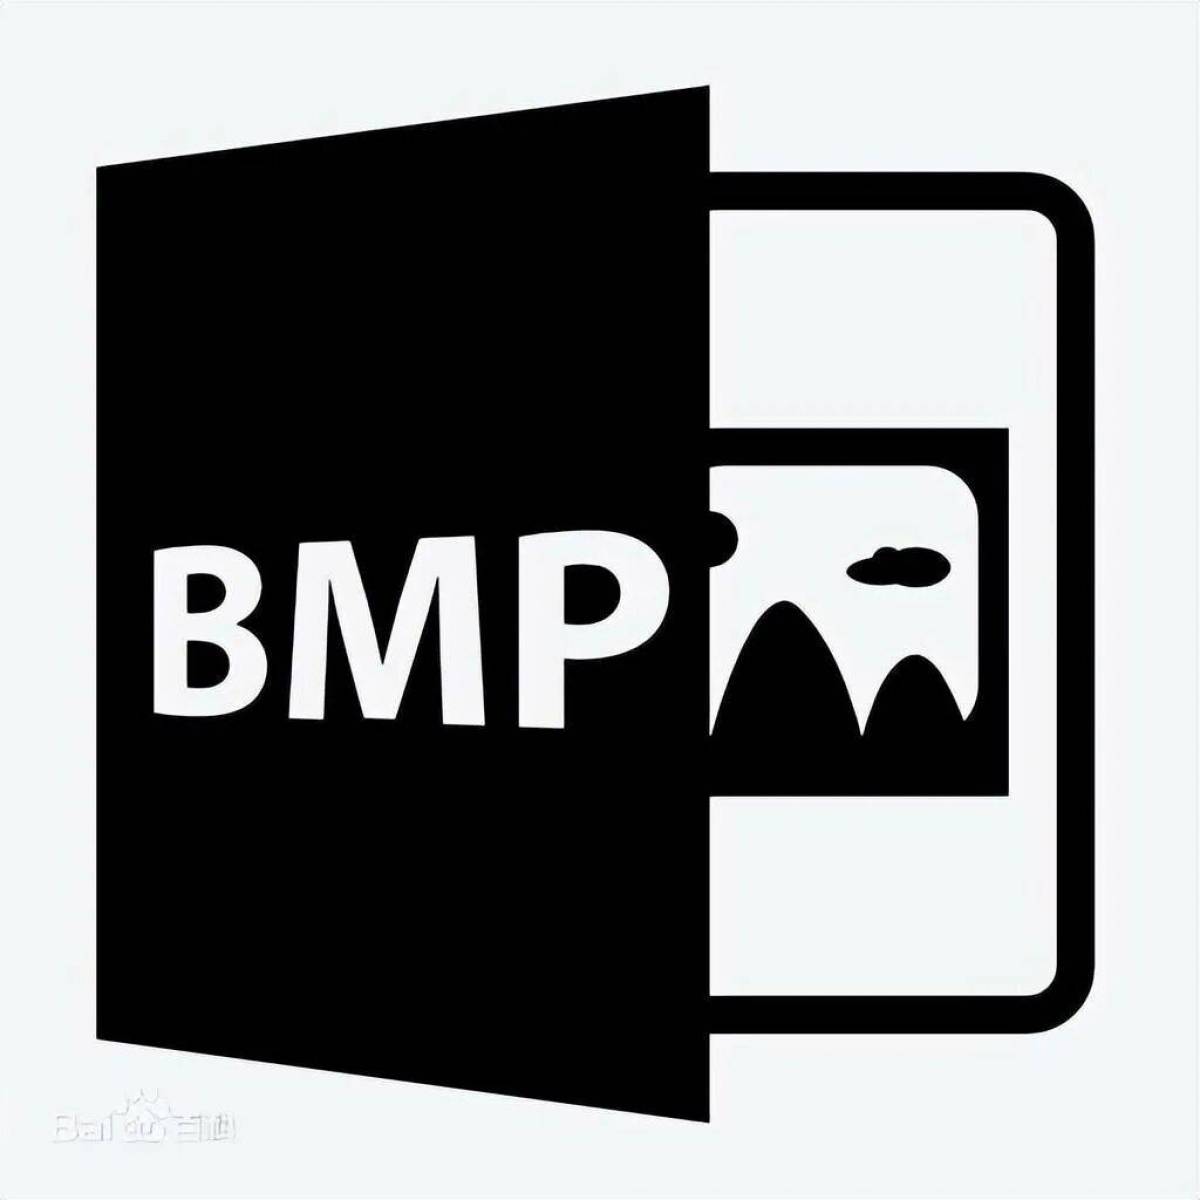 Bmp picture. Bmp Формат. Bmp (Формат файлов). Файлы с расширением bmp. Изображения в формате bmp.